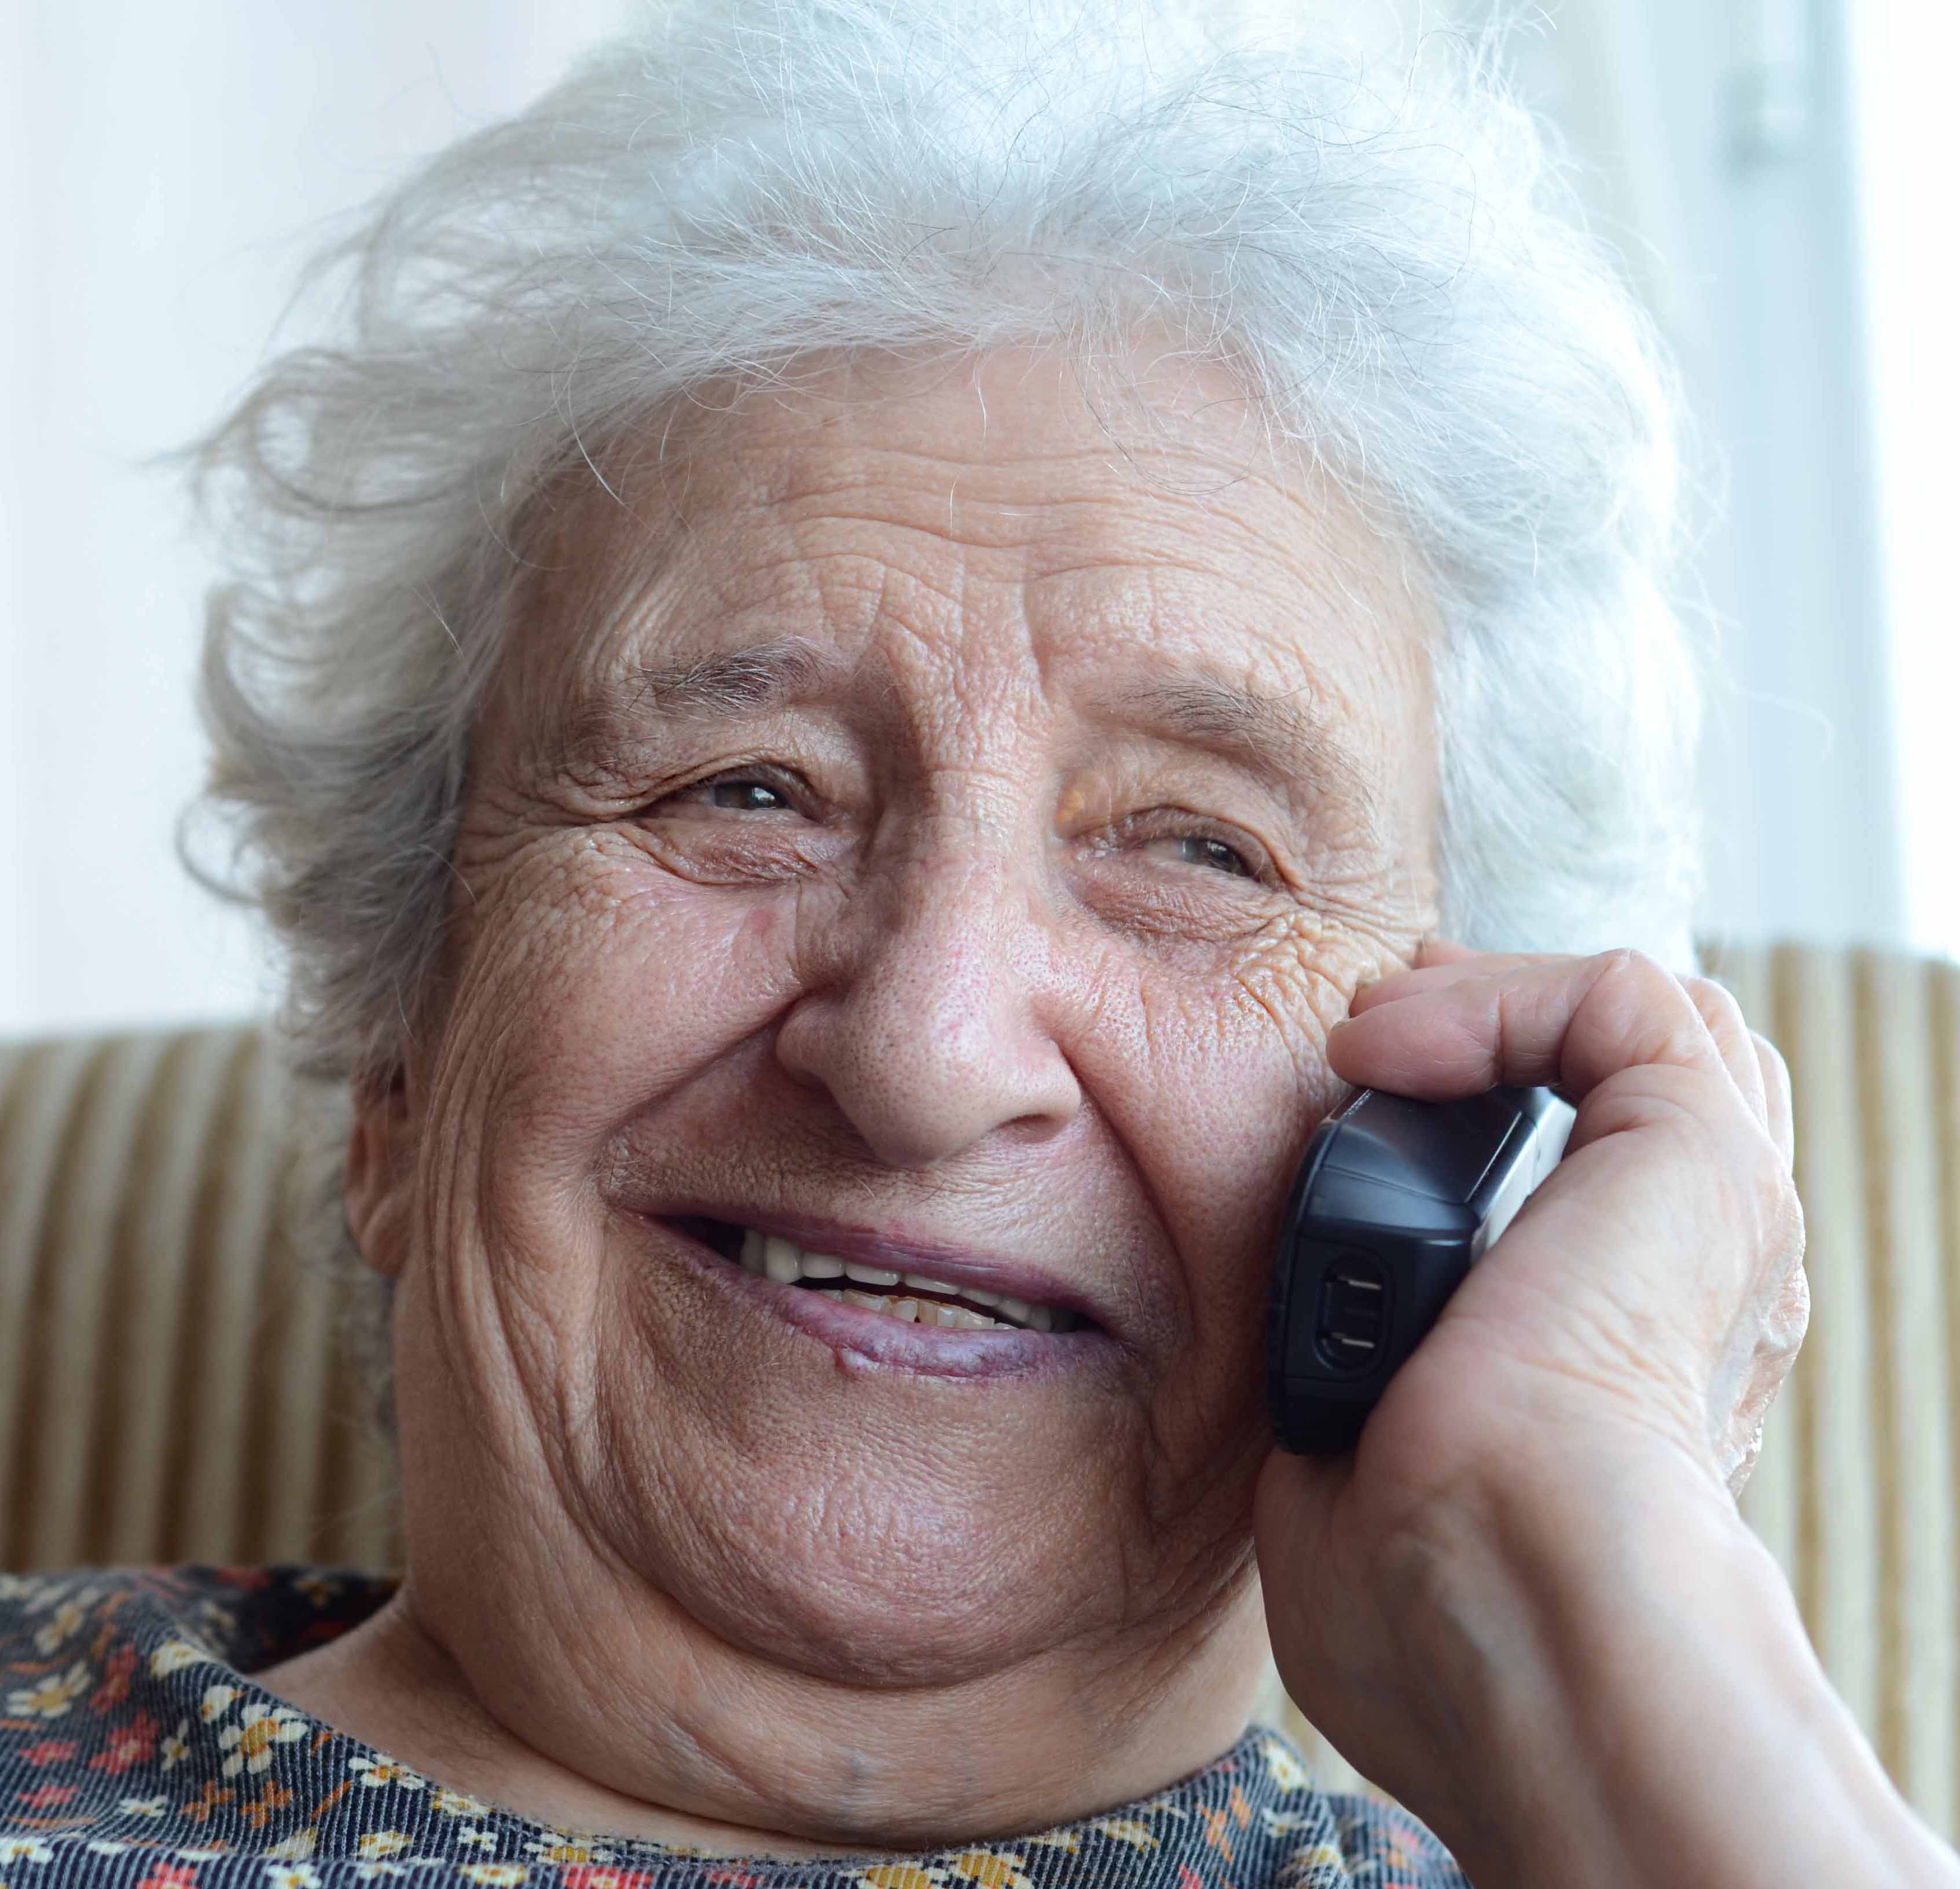 Бабушка что будет делать. Бабушка с мобильником. Телефон для пожилых людей. Старуха с телефоном. Бабуля с телефоном.